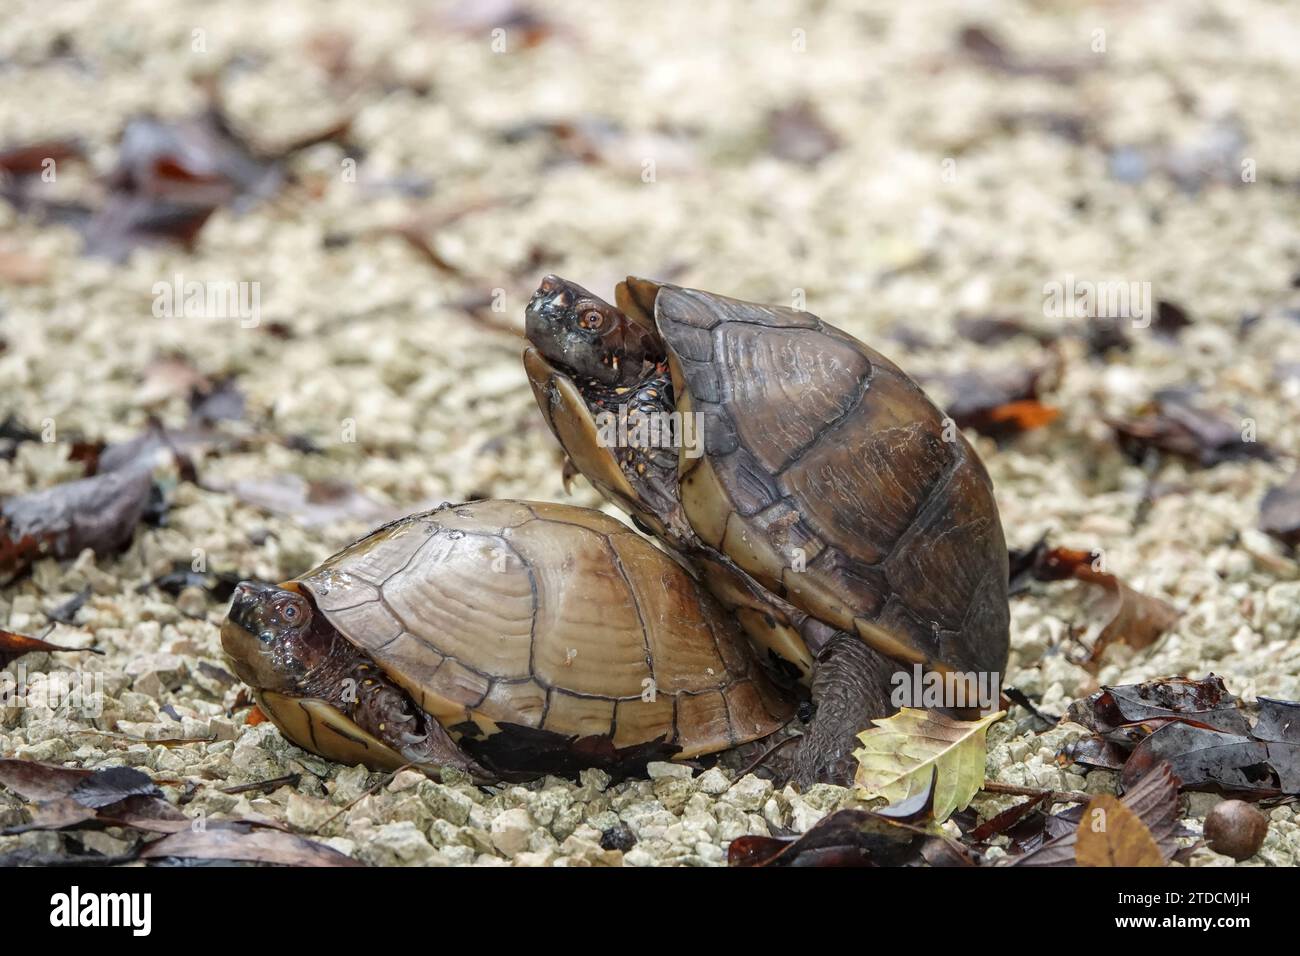 Kastenschildkröten paaren sich in Texas, USA – wahrscheinlich Terrapene carolina triunguis (dreizehige Kastenschildkröte) Stockfoto